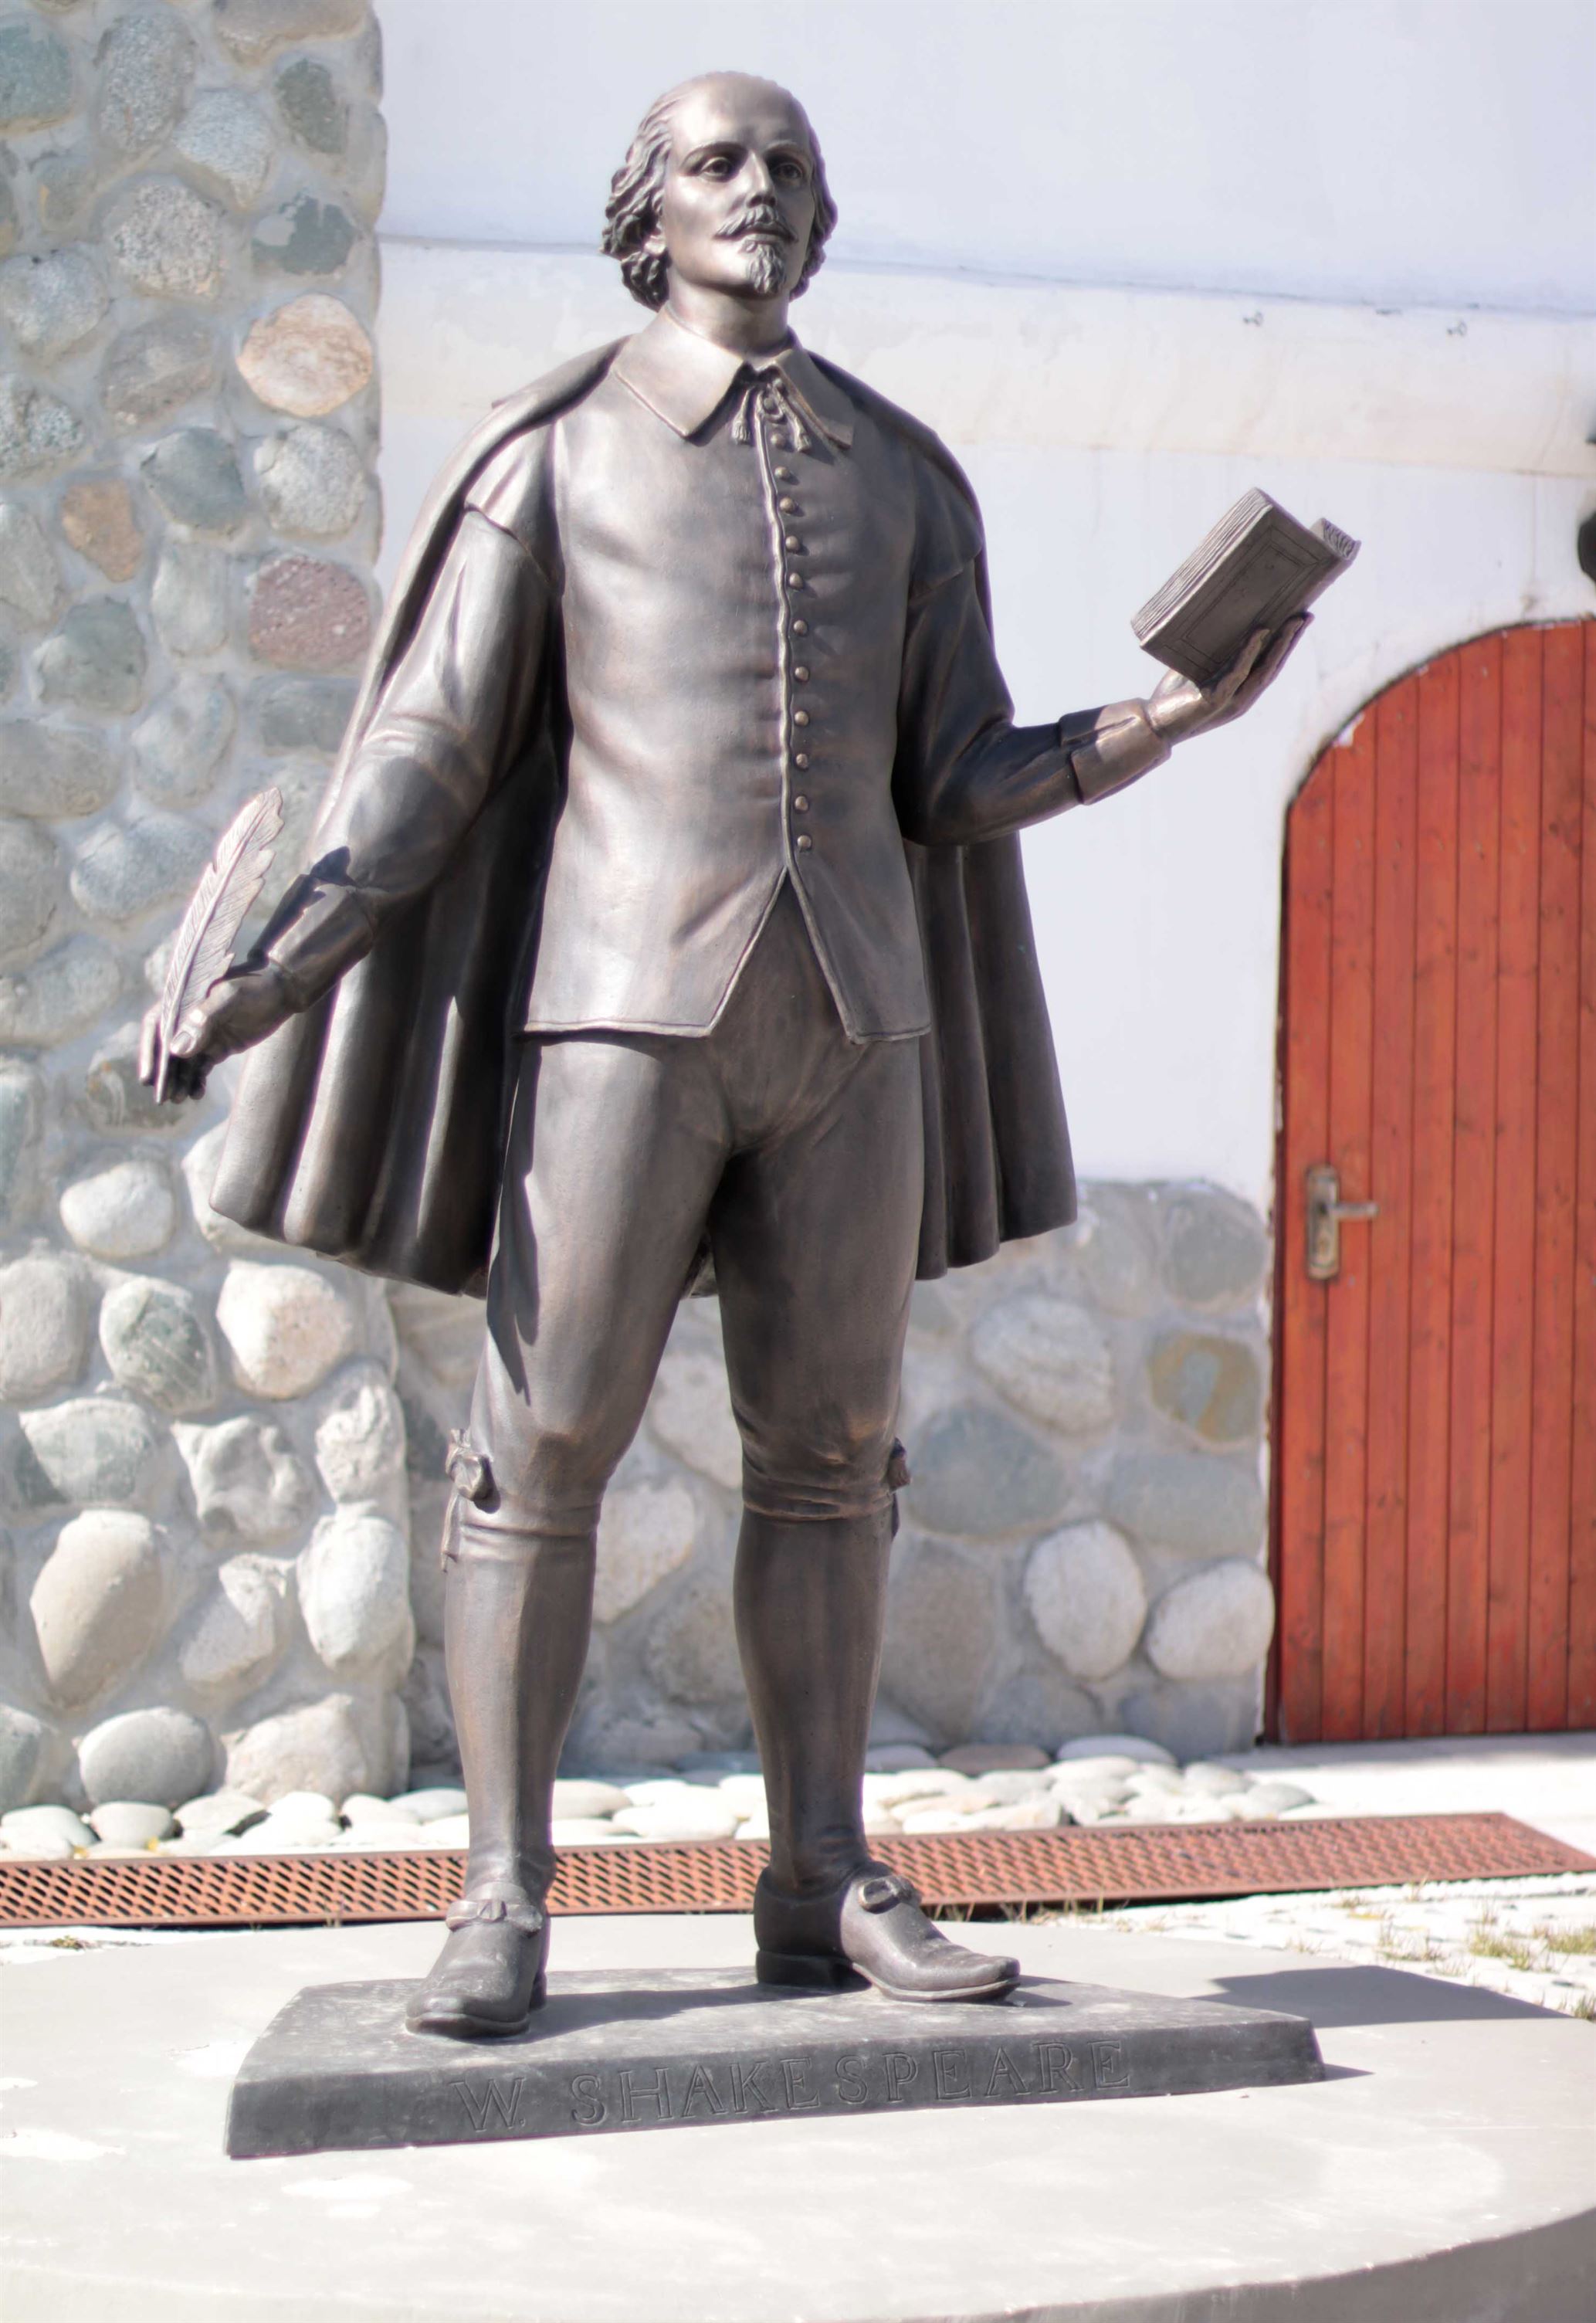 Памятник Уильяму Шекспиру на территории Культурно-образовательного центра «Этномир». - IMG 2717 копия